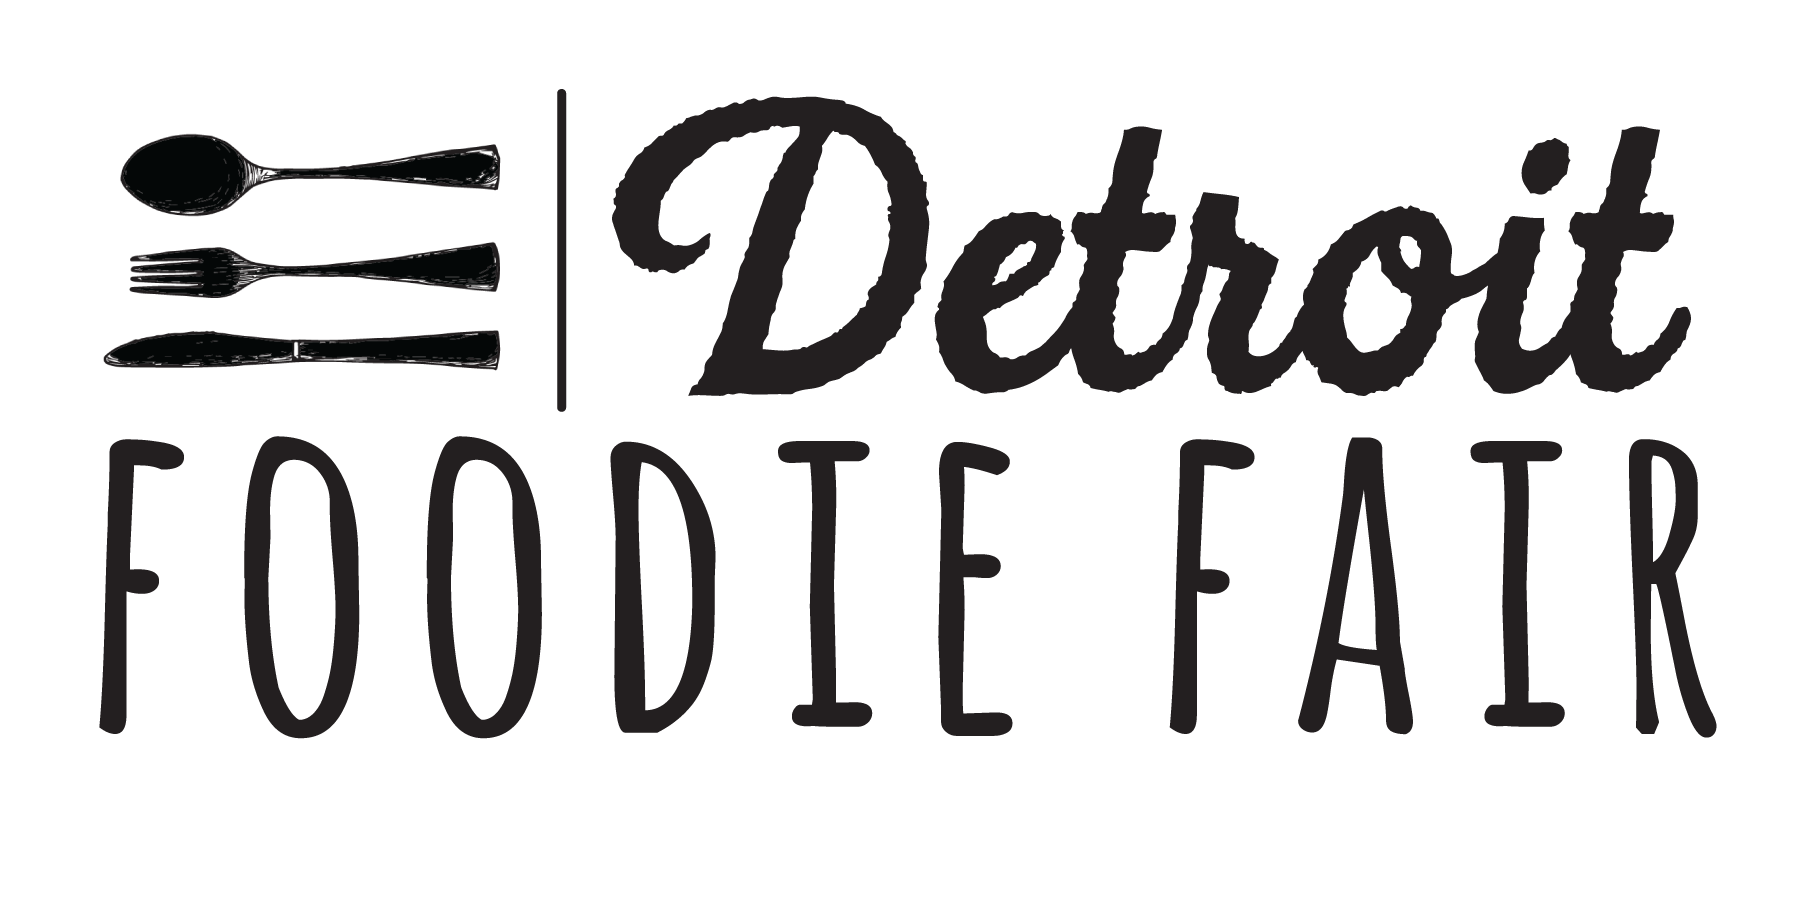 Detroit Foodie Fair